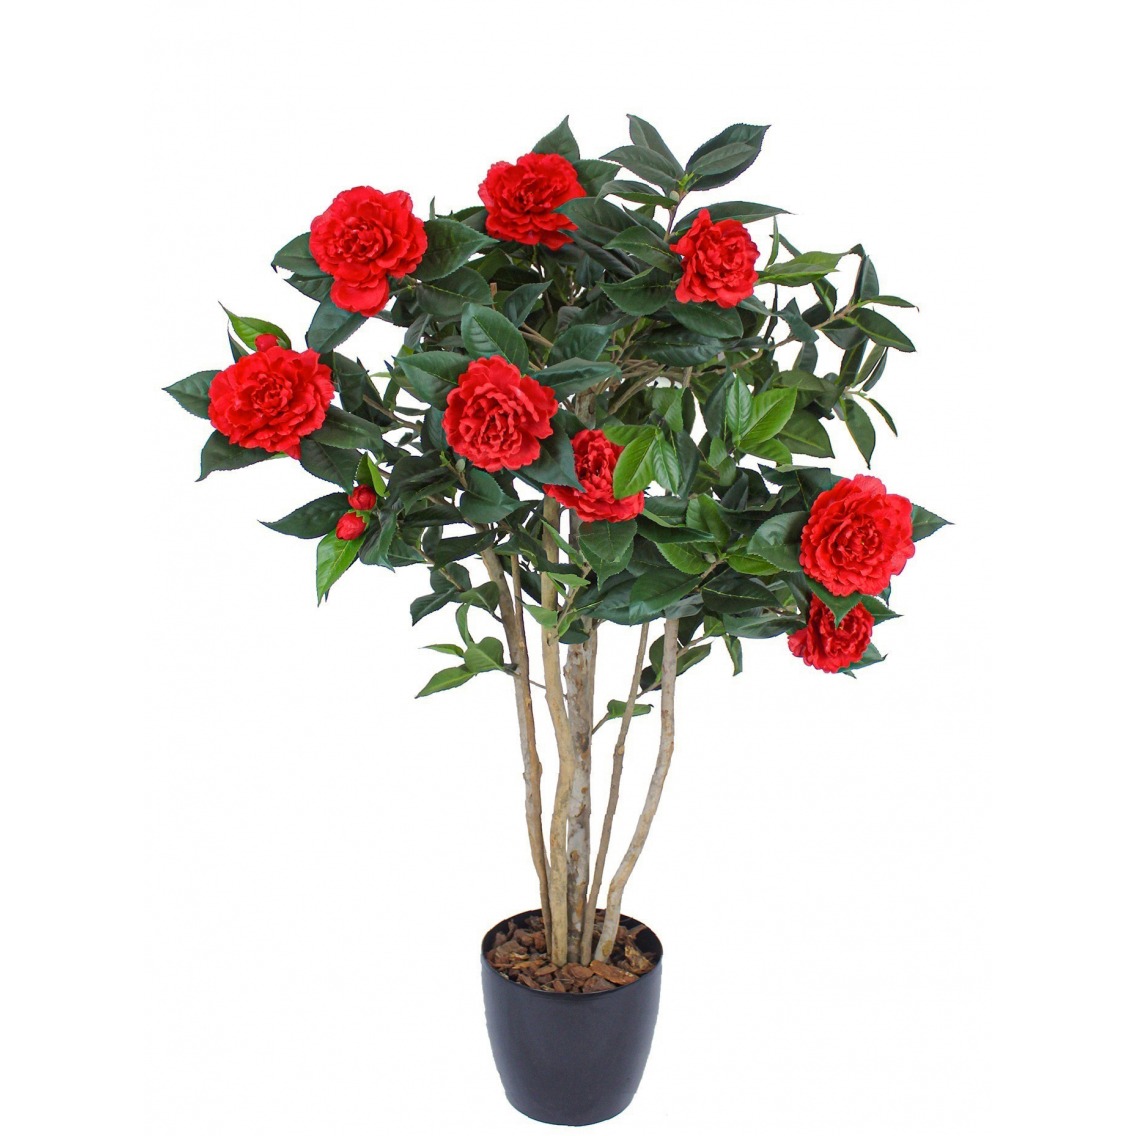 Grand Pot De Fleurs Extérieur Avec Fleurs Rouges Image stock